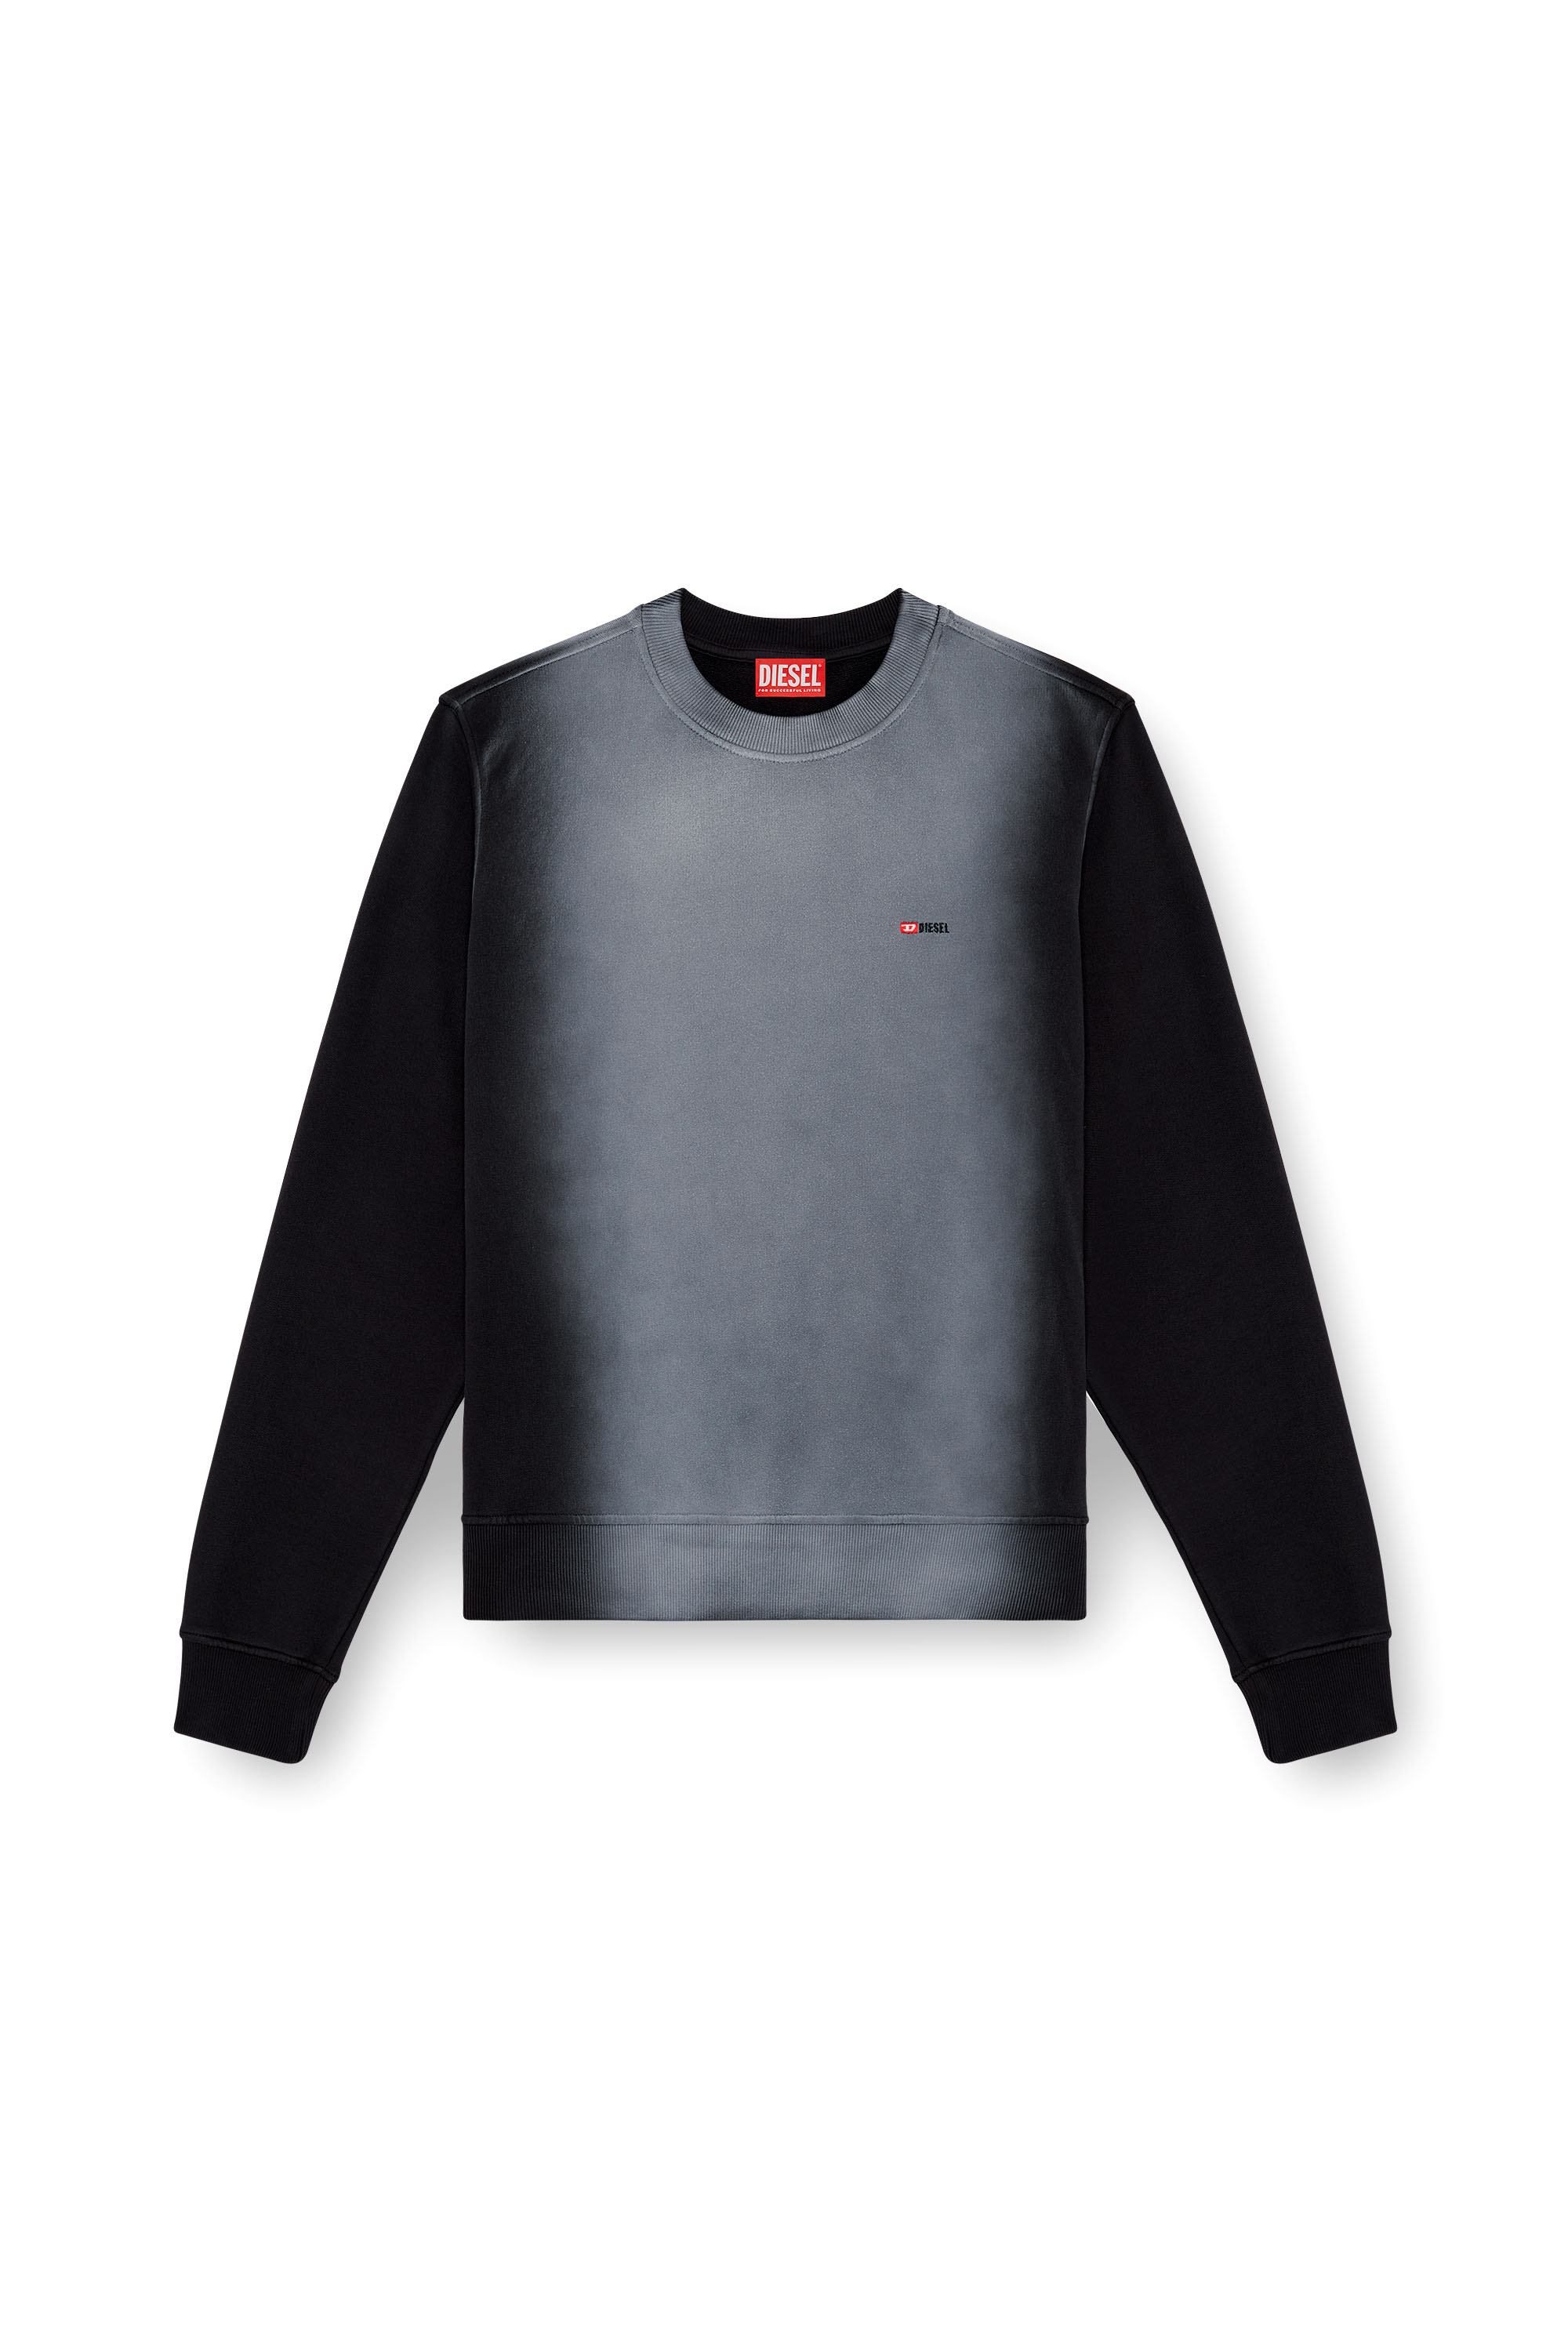 Diesel - S-GINN-K48, Homme Sweat-shirt en coton avec empiècements délavés in Noir - Image 3